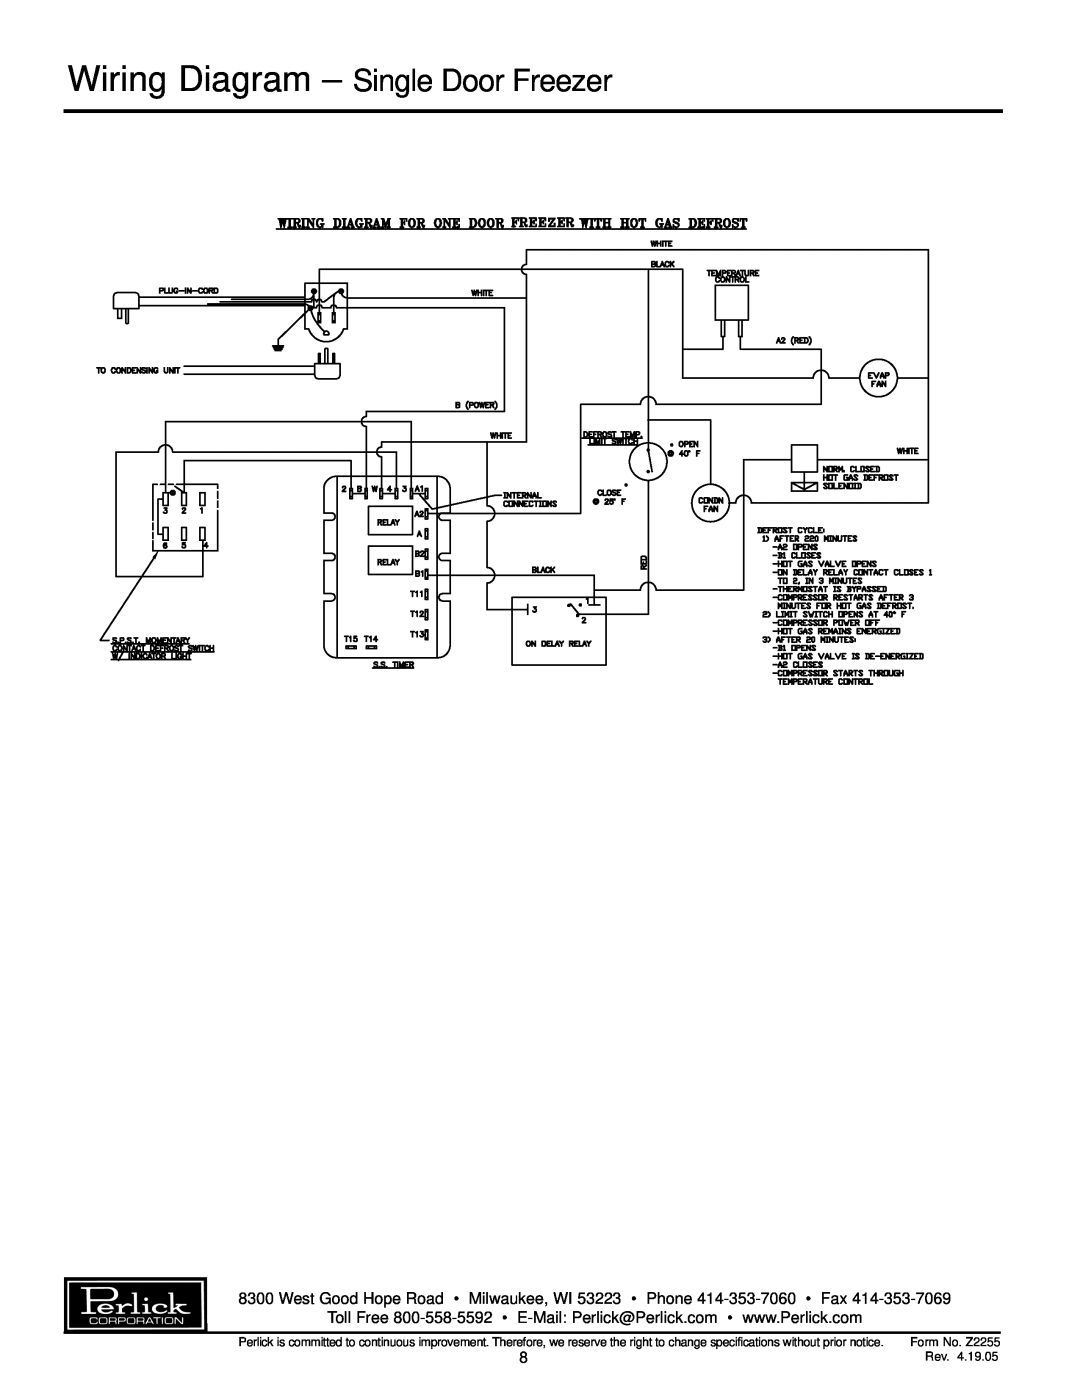 Perlick F24S F24N specifications Wiring Diagram - Single Door Freezer, Form No. Z2255 